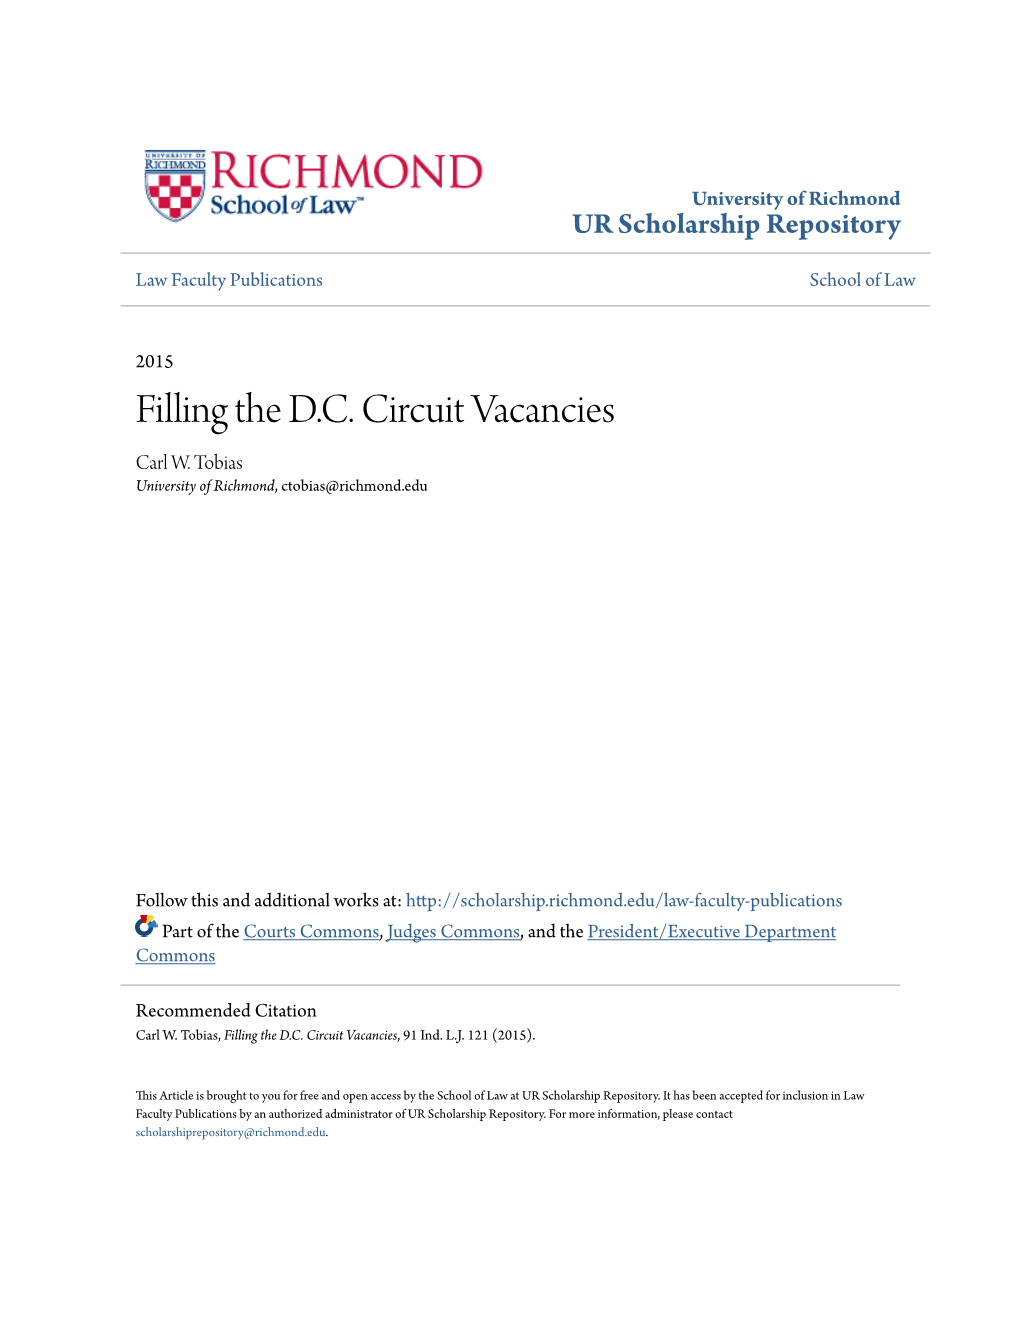 Filling the D.C. Circuit Vacancies Carl W